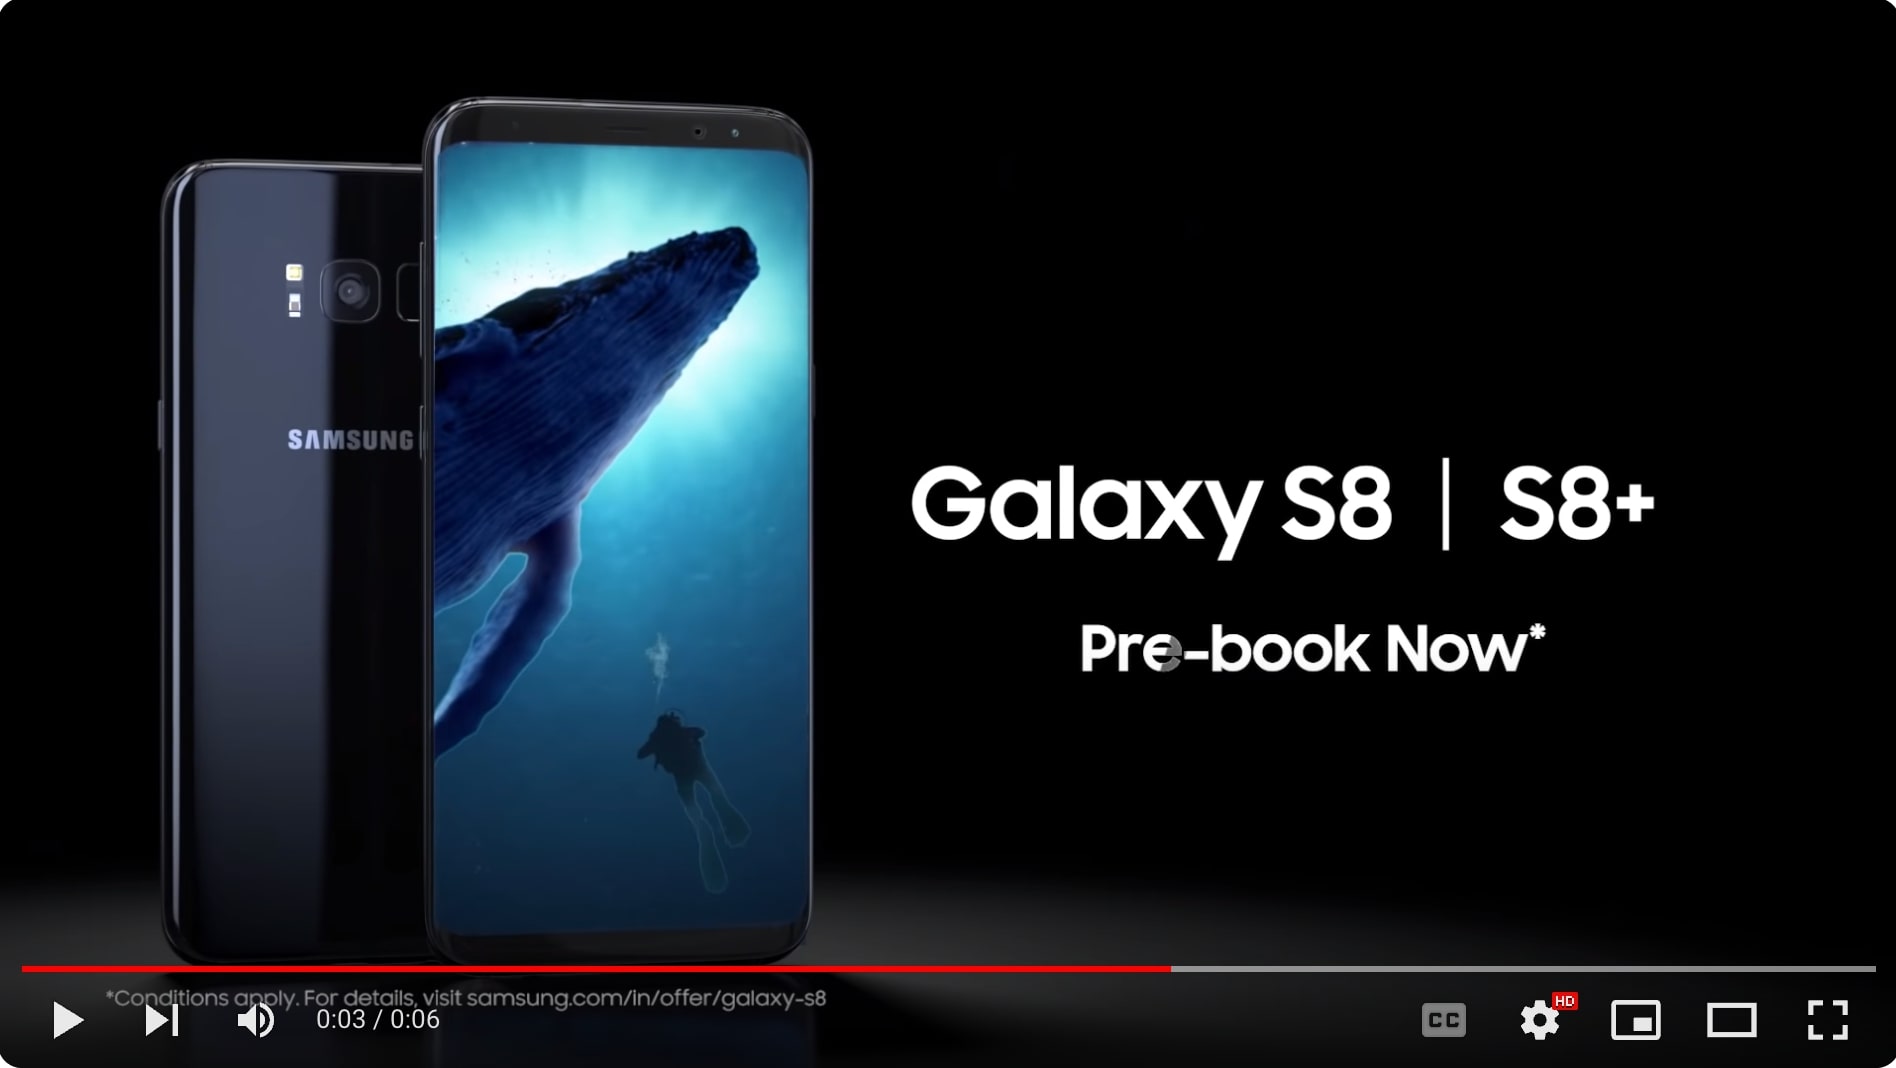 Samsung’s bumper ad "Galaxy S8 / S8+ Pre-book Now!